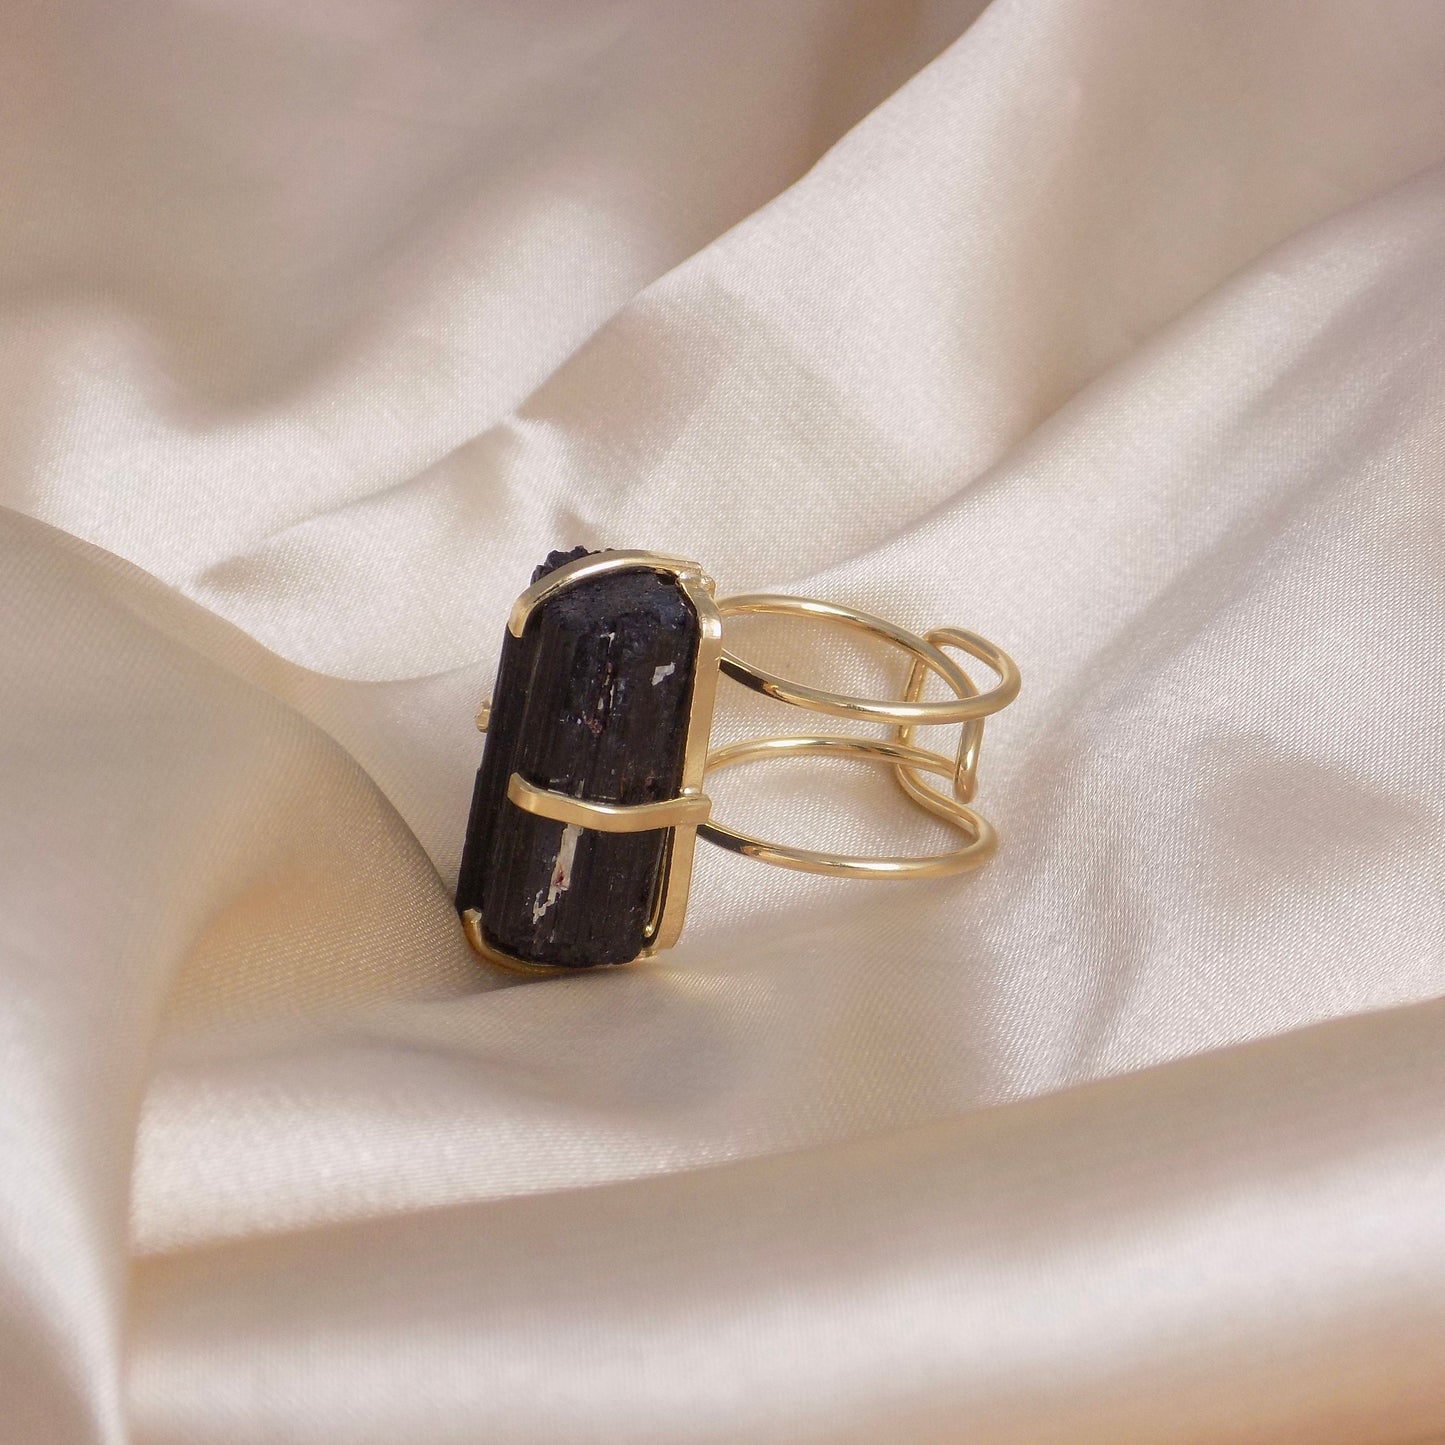 Black Tourmaline Ring - Raw Tourmaline Ring - Black Crystal Ring - Statement Ring - Raw Stone Ring Gold Adjust Boho Rings For Women G14-180